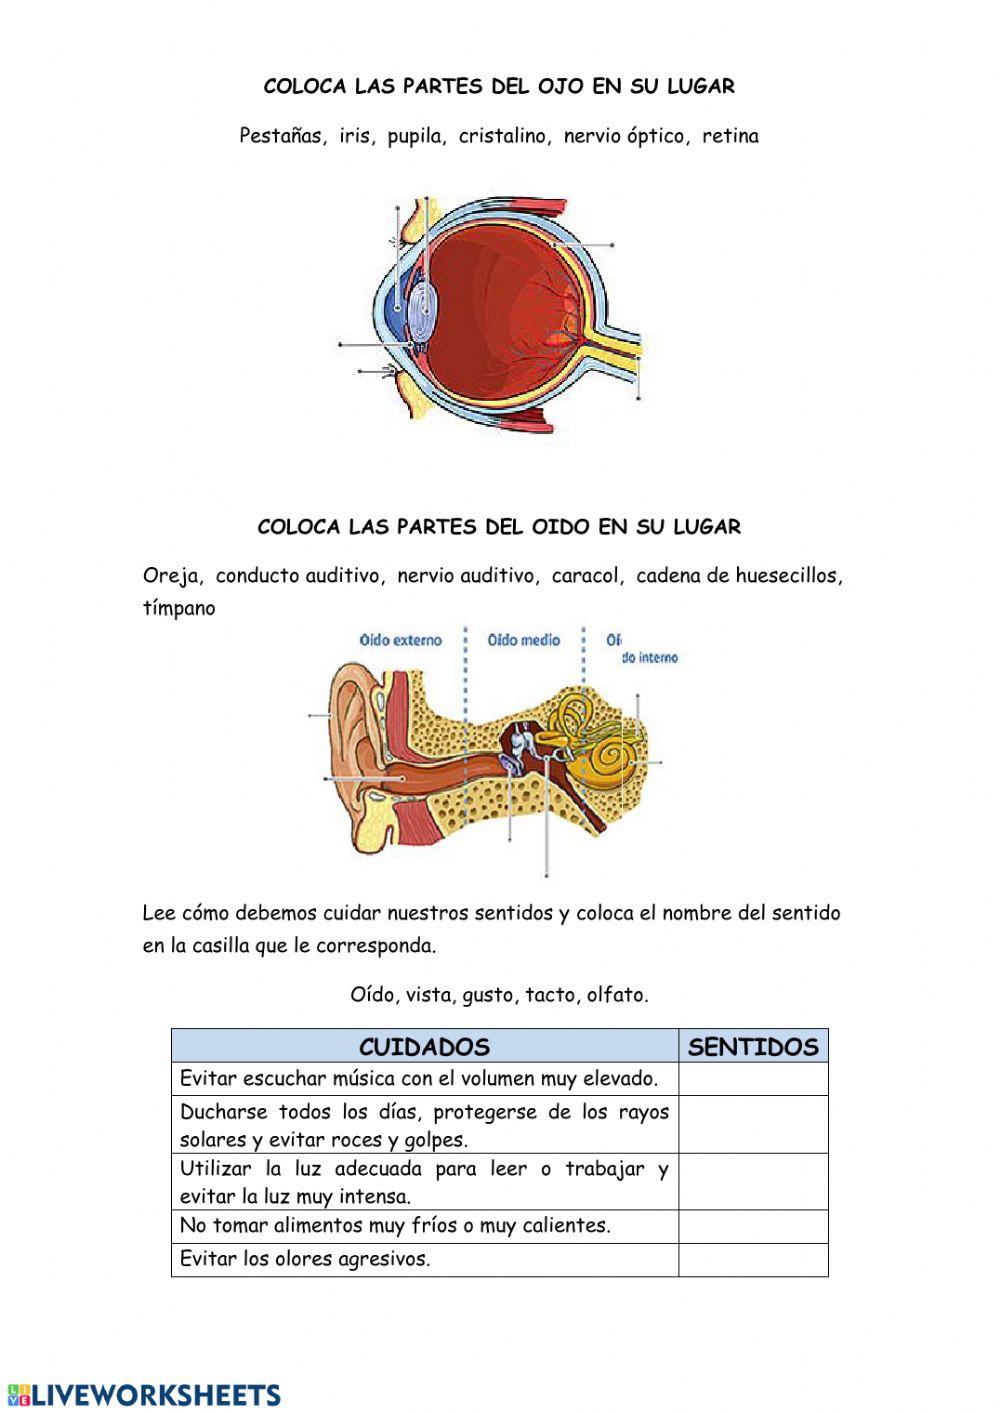 Fisiología del ojo y el oído